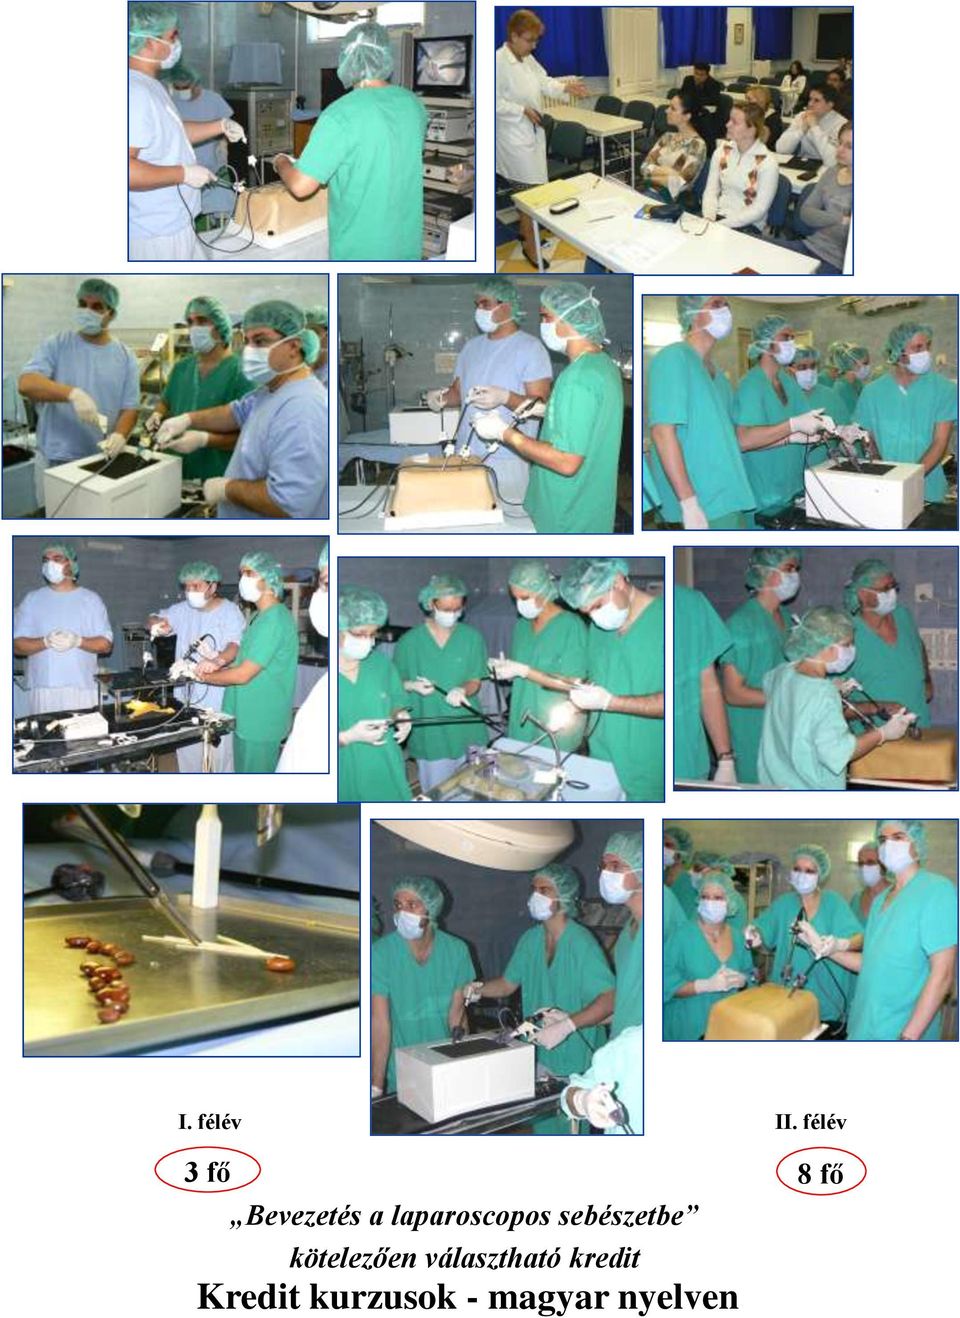 laparoscopos sebészetbe